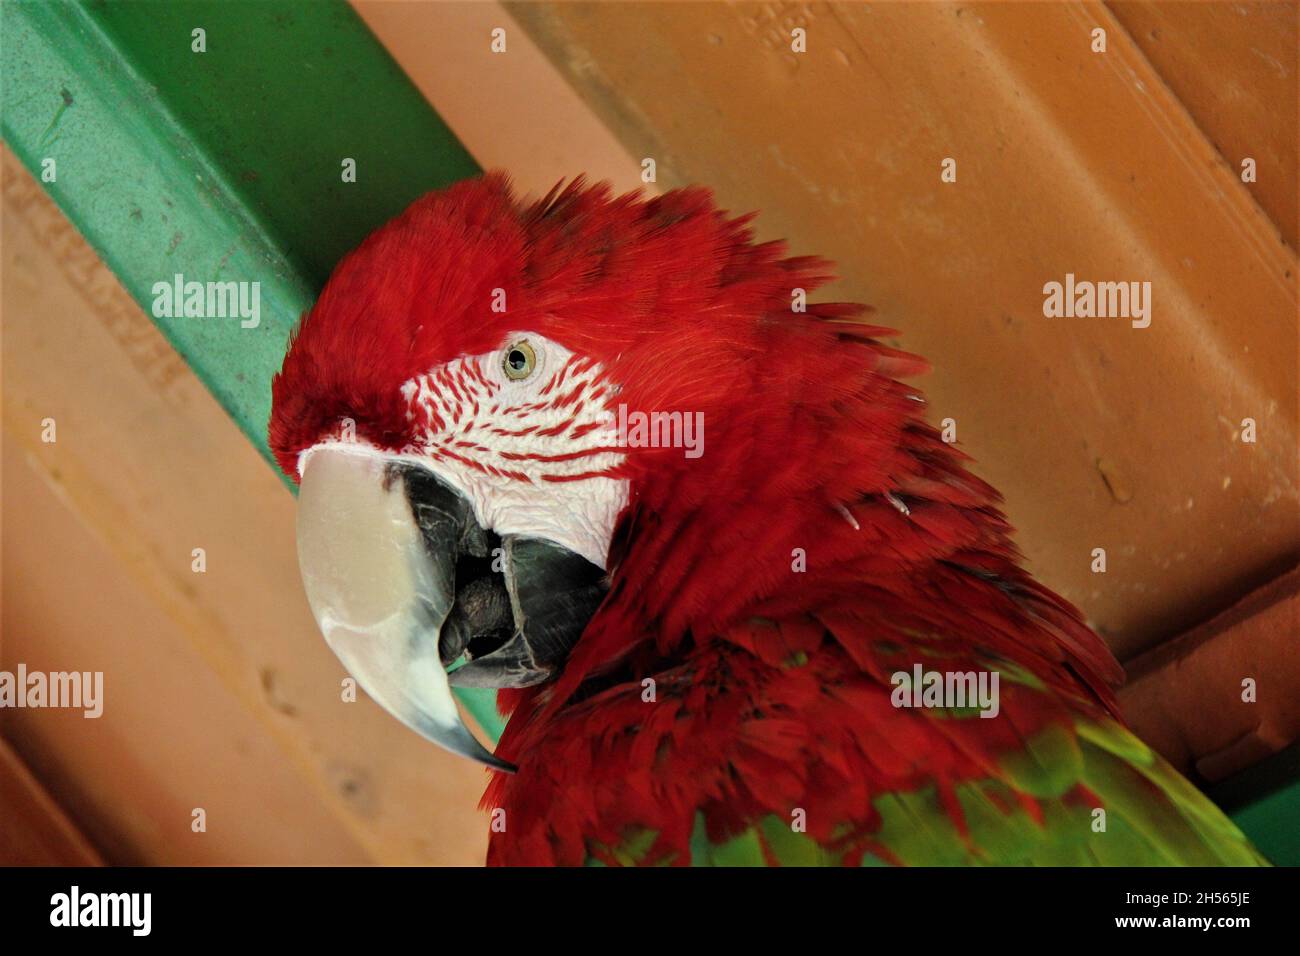 Gros plan sur le visage d'un perroquet, macaw rouge, regardant l'appareil photo à Bonito - Mato Grosso do Sul - Brésil. Banque D'Images